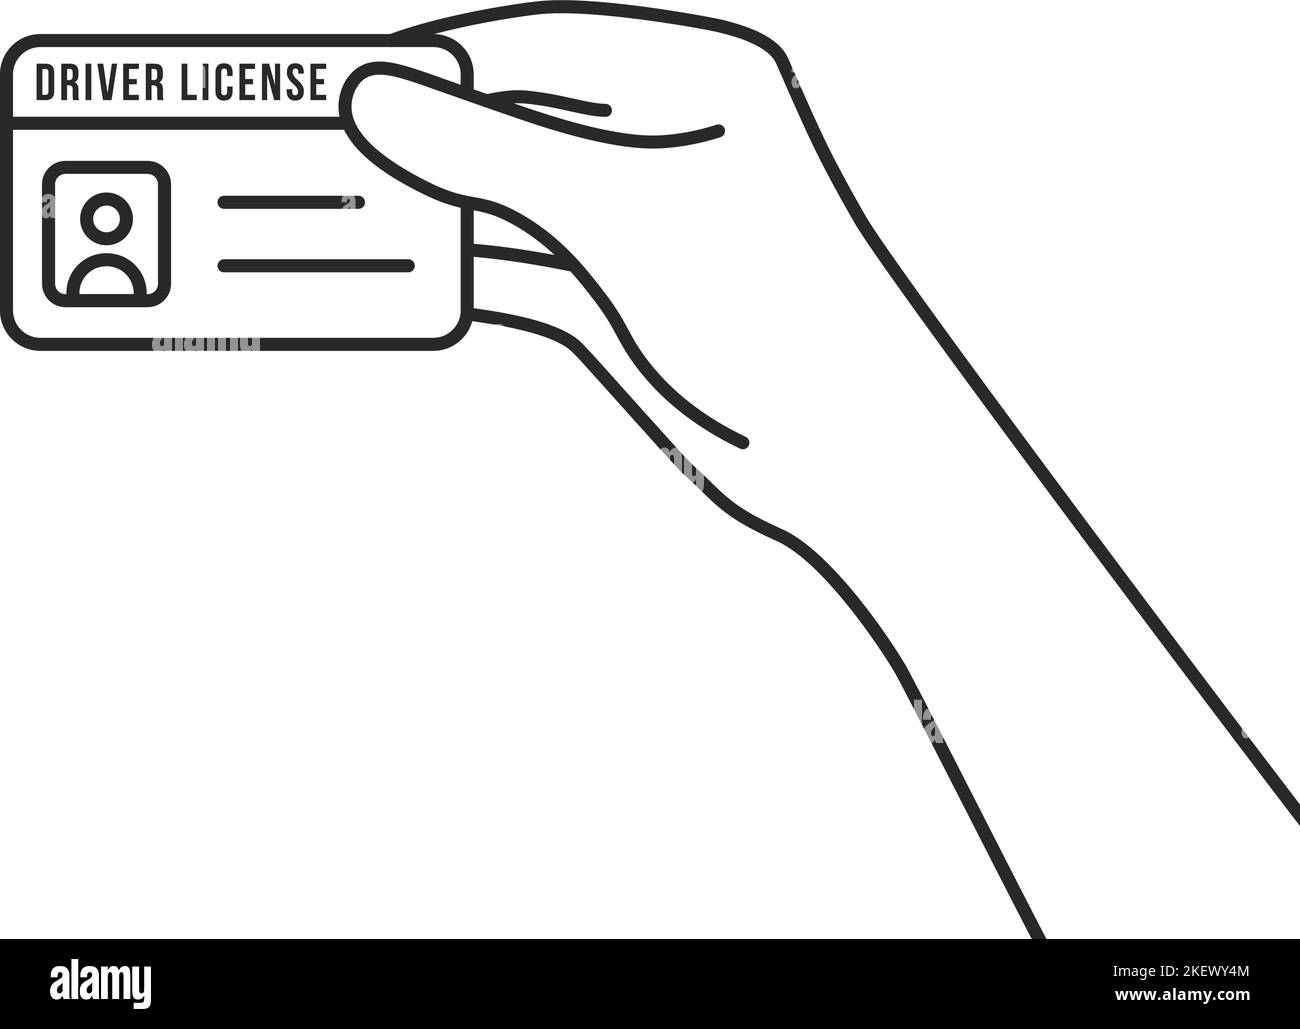 licencia de conductor de línea fina de mano Ilustración del Vector